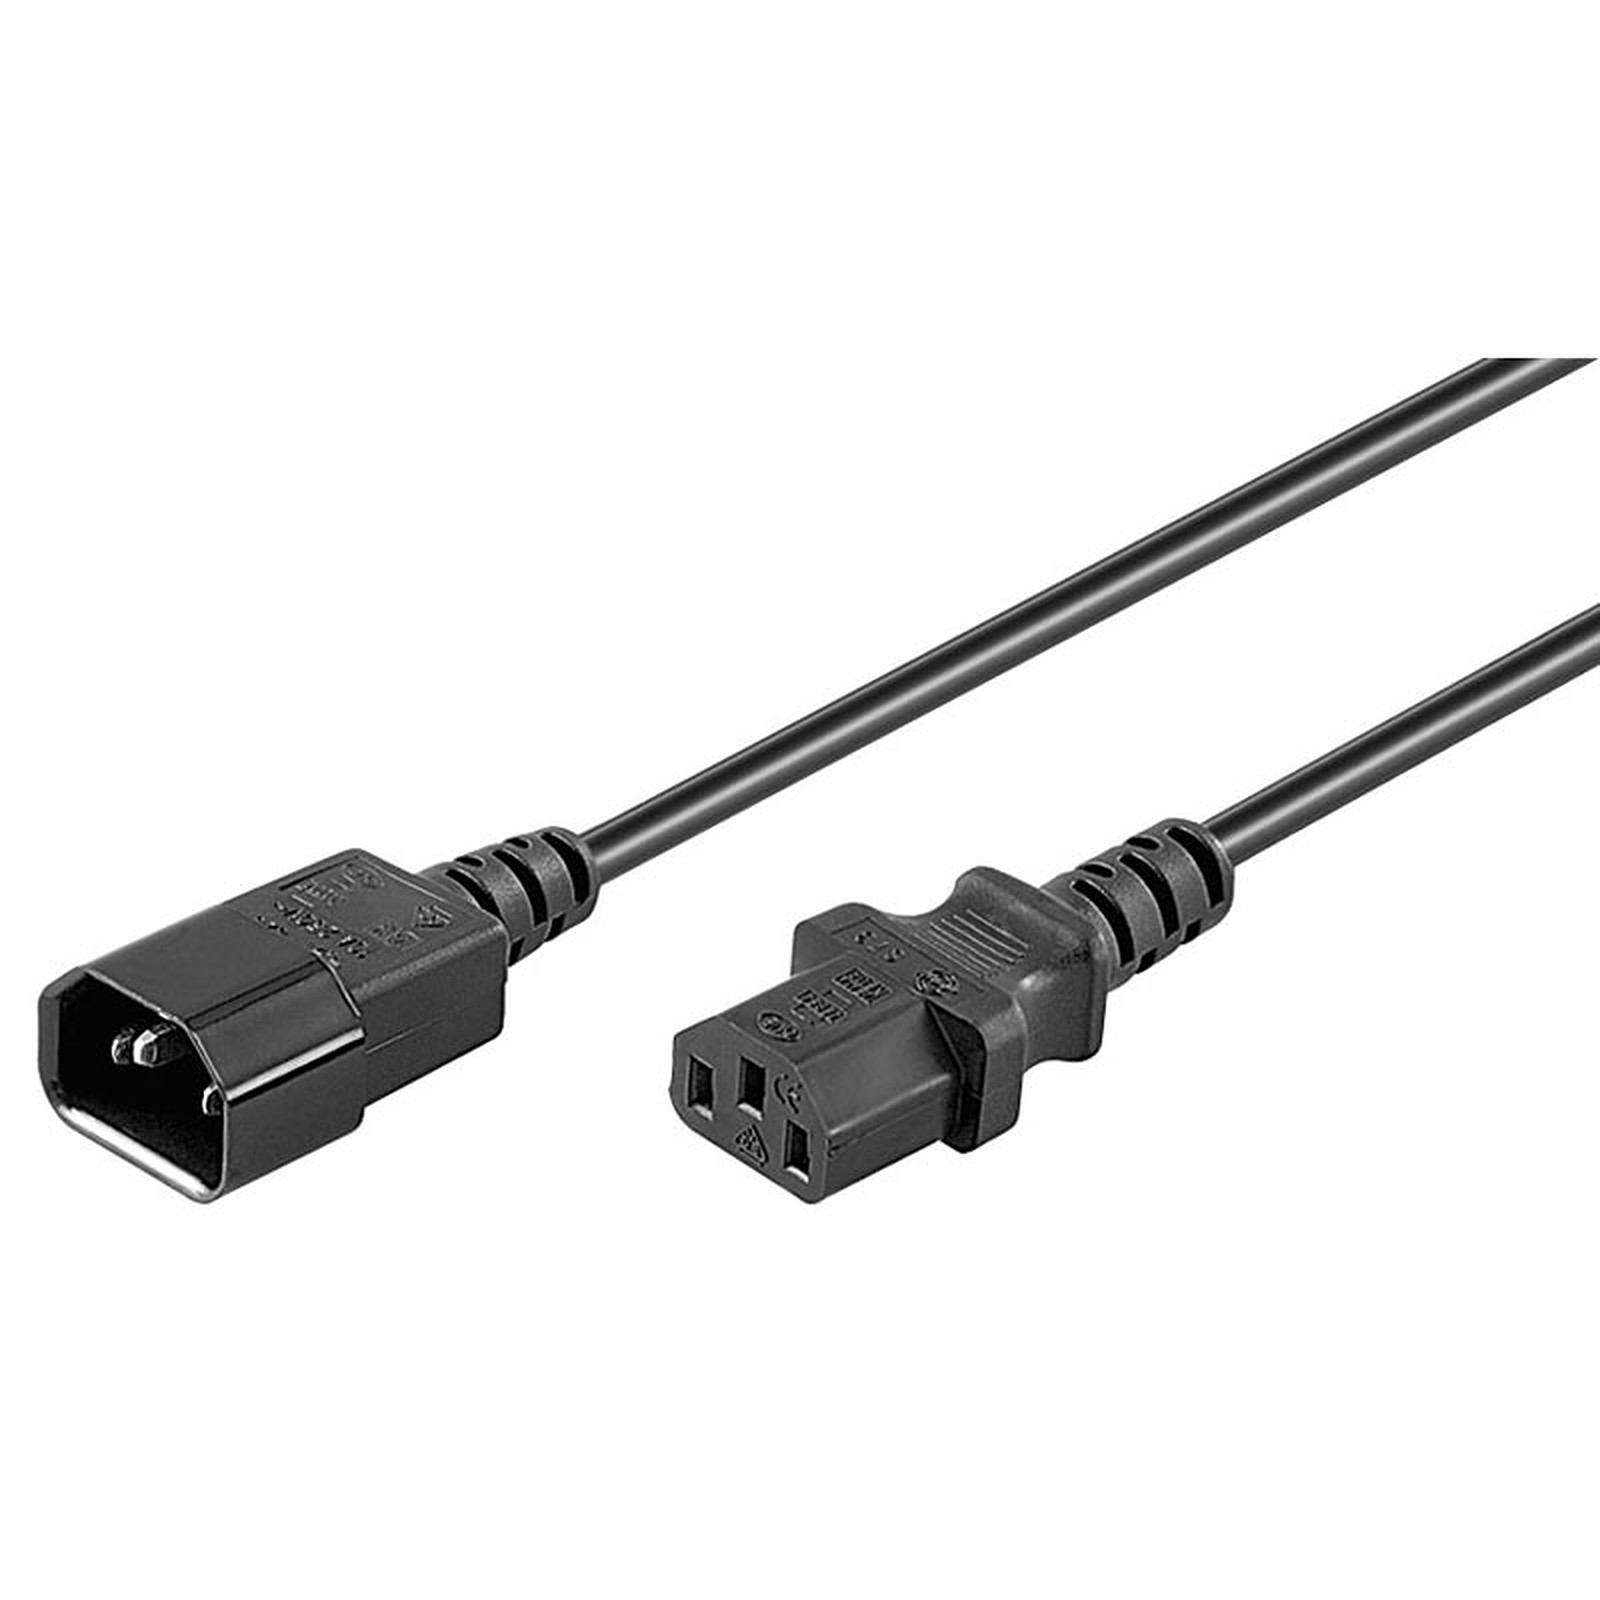 Rallonge d'alimentation pour PC, moniteur et onduleur (0.5 m) - (coloris noir) - Cable Secteur Generique